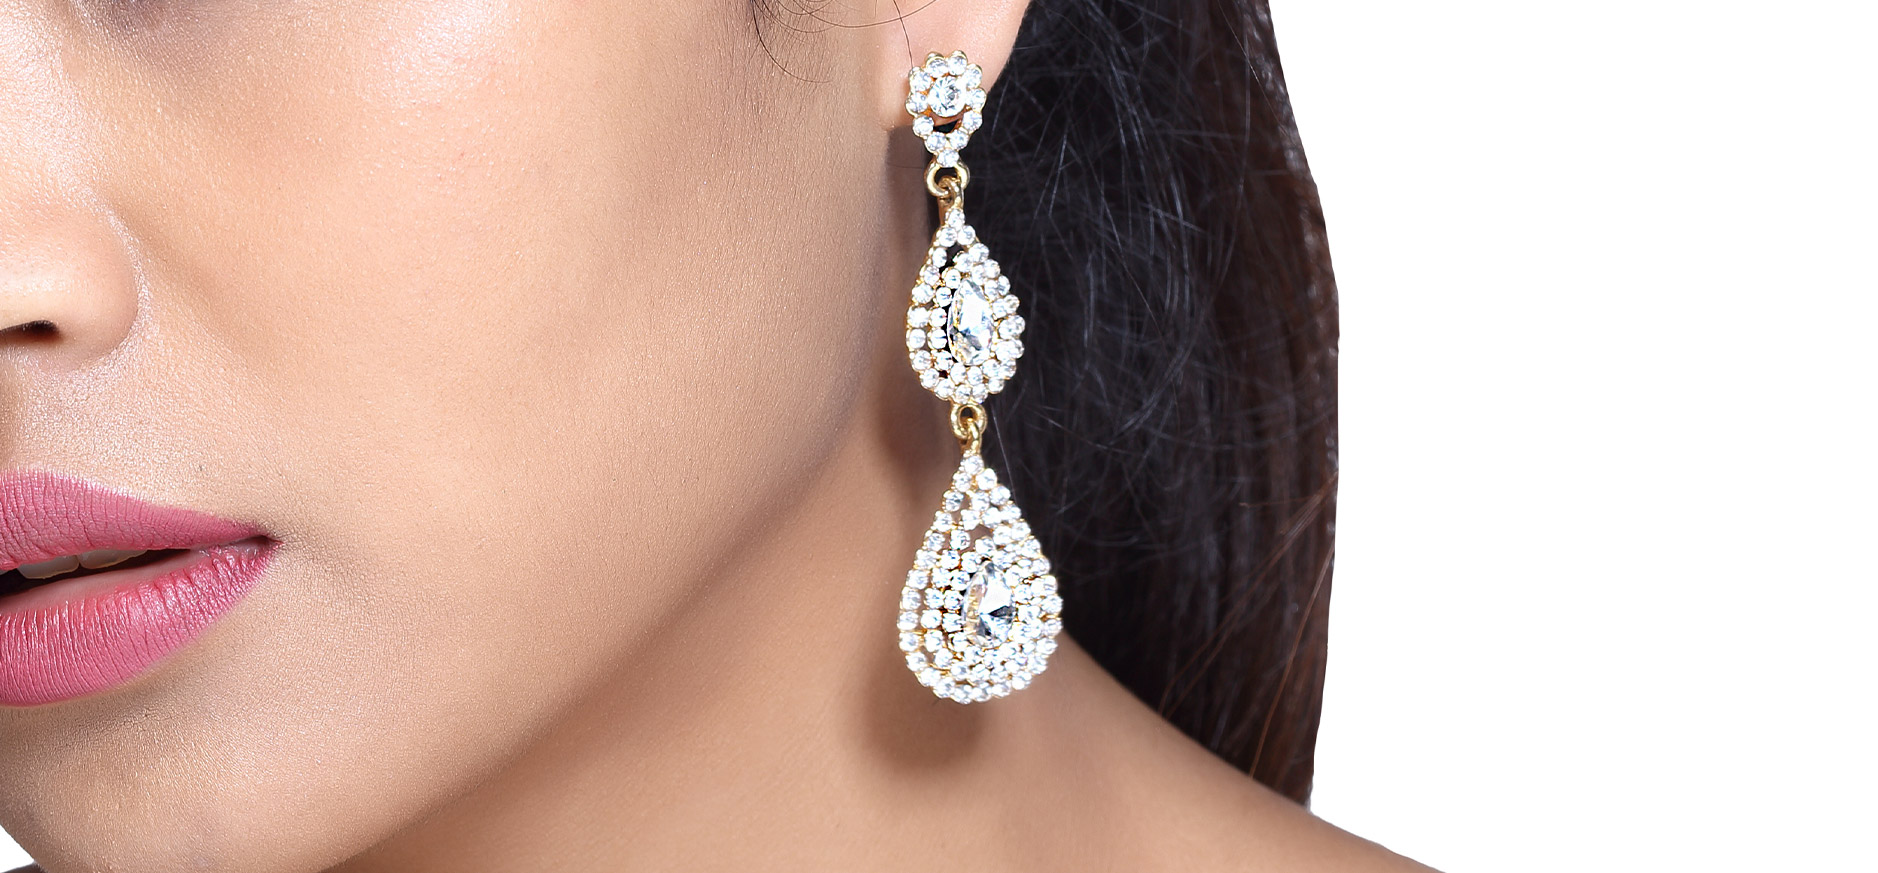 diamond earrings buying guide - chandelier earrings